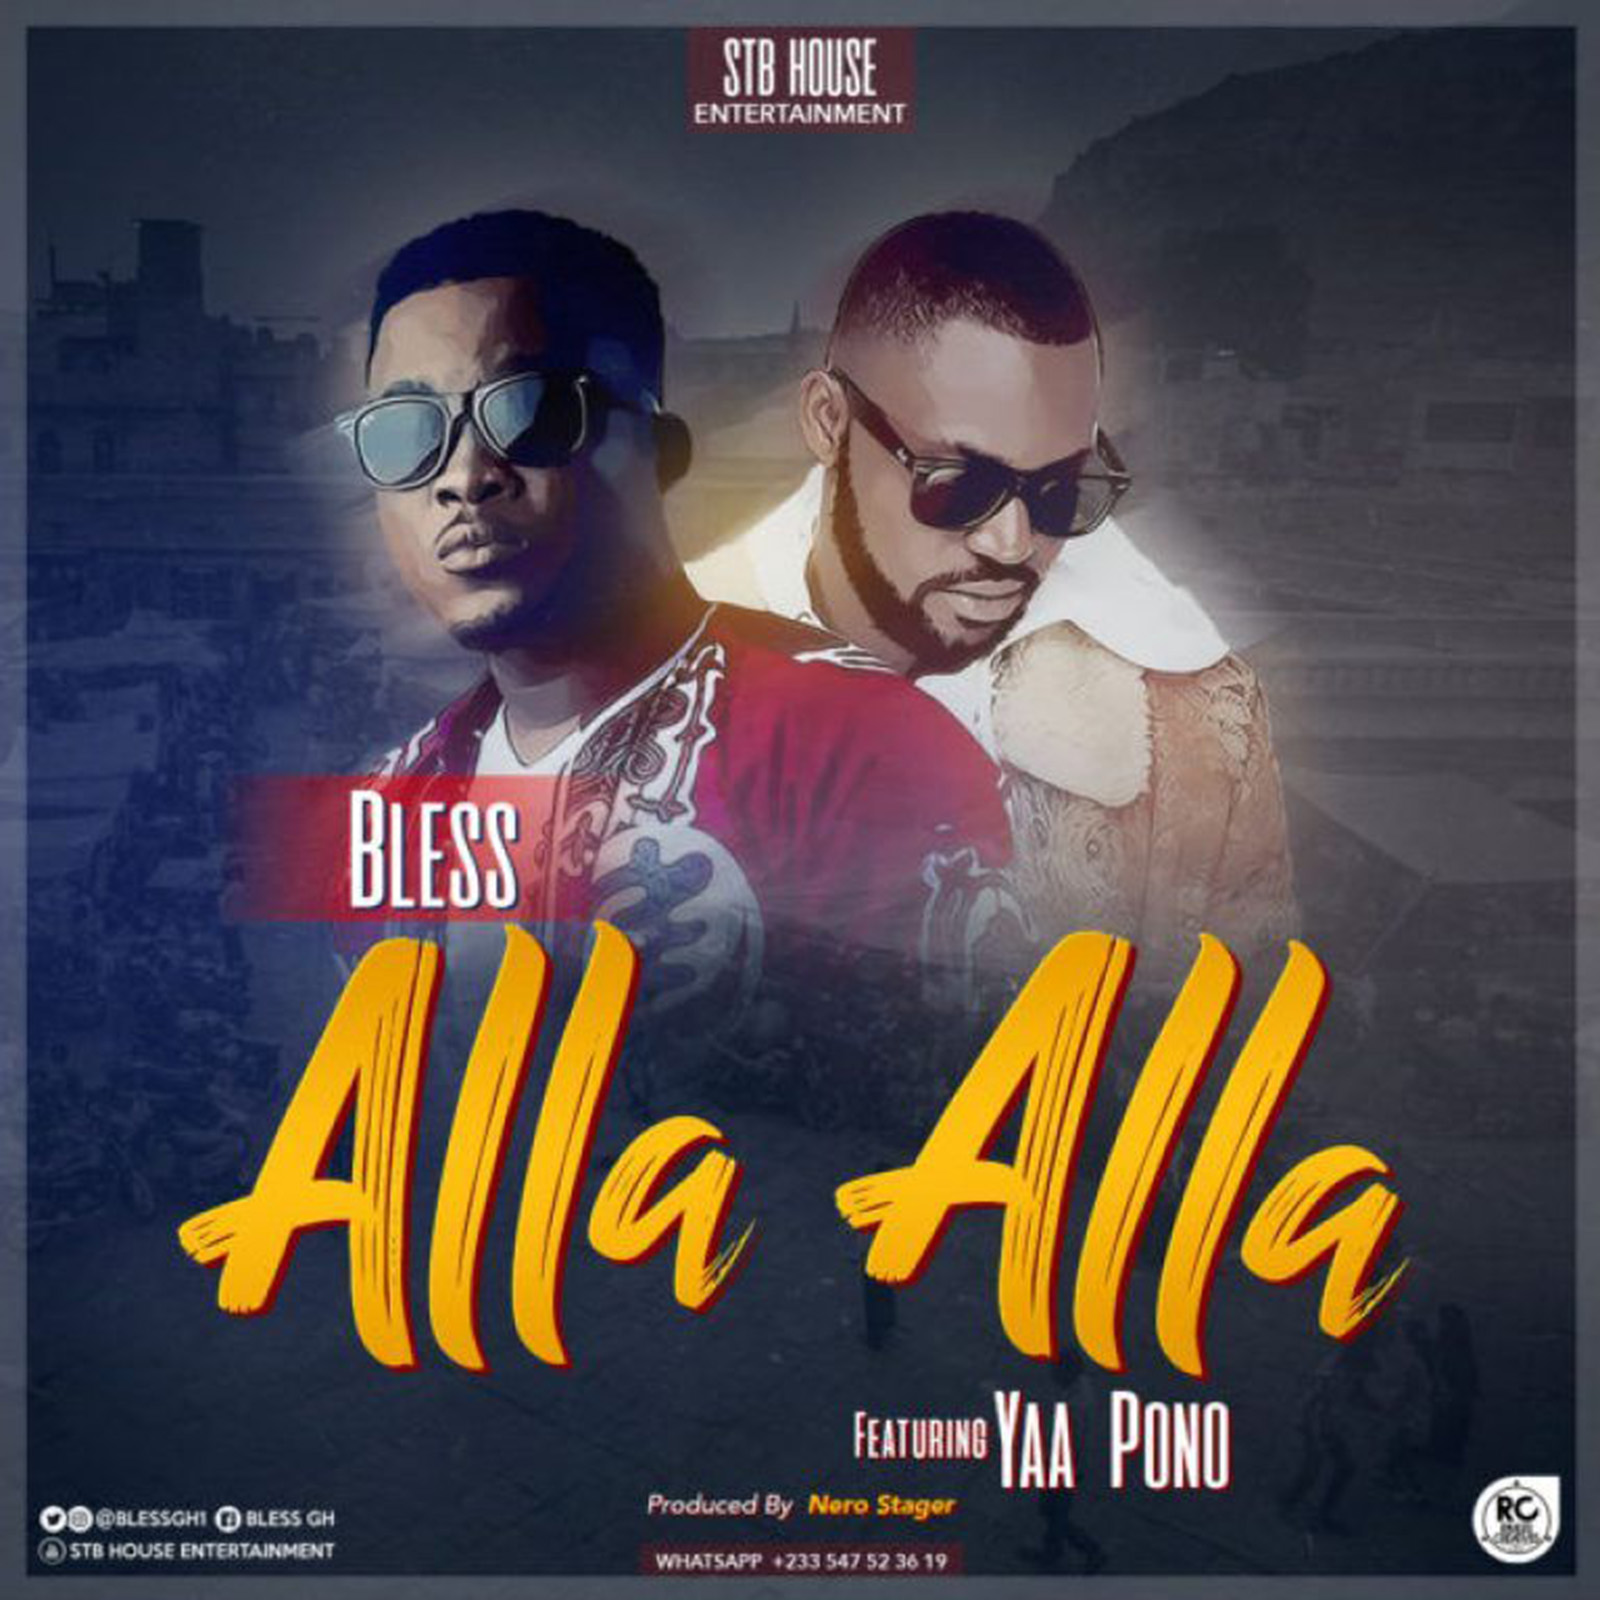 Alla Alla by Bless feat. Yaa Pono